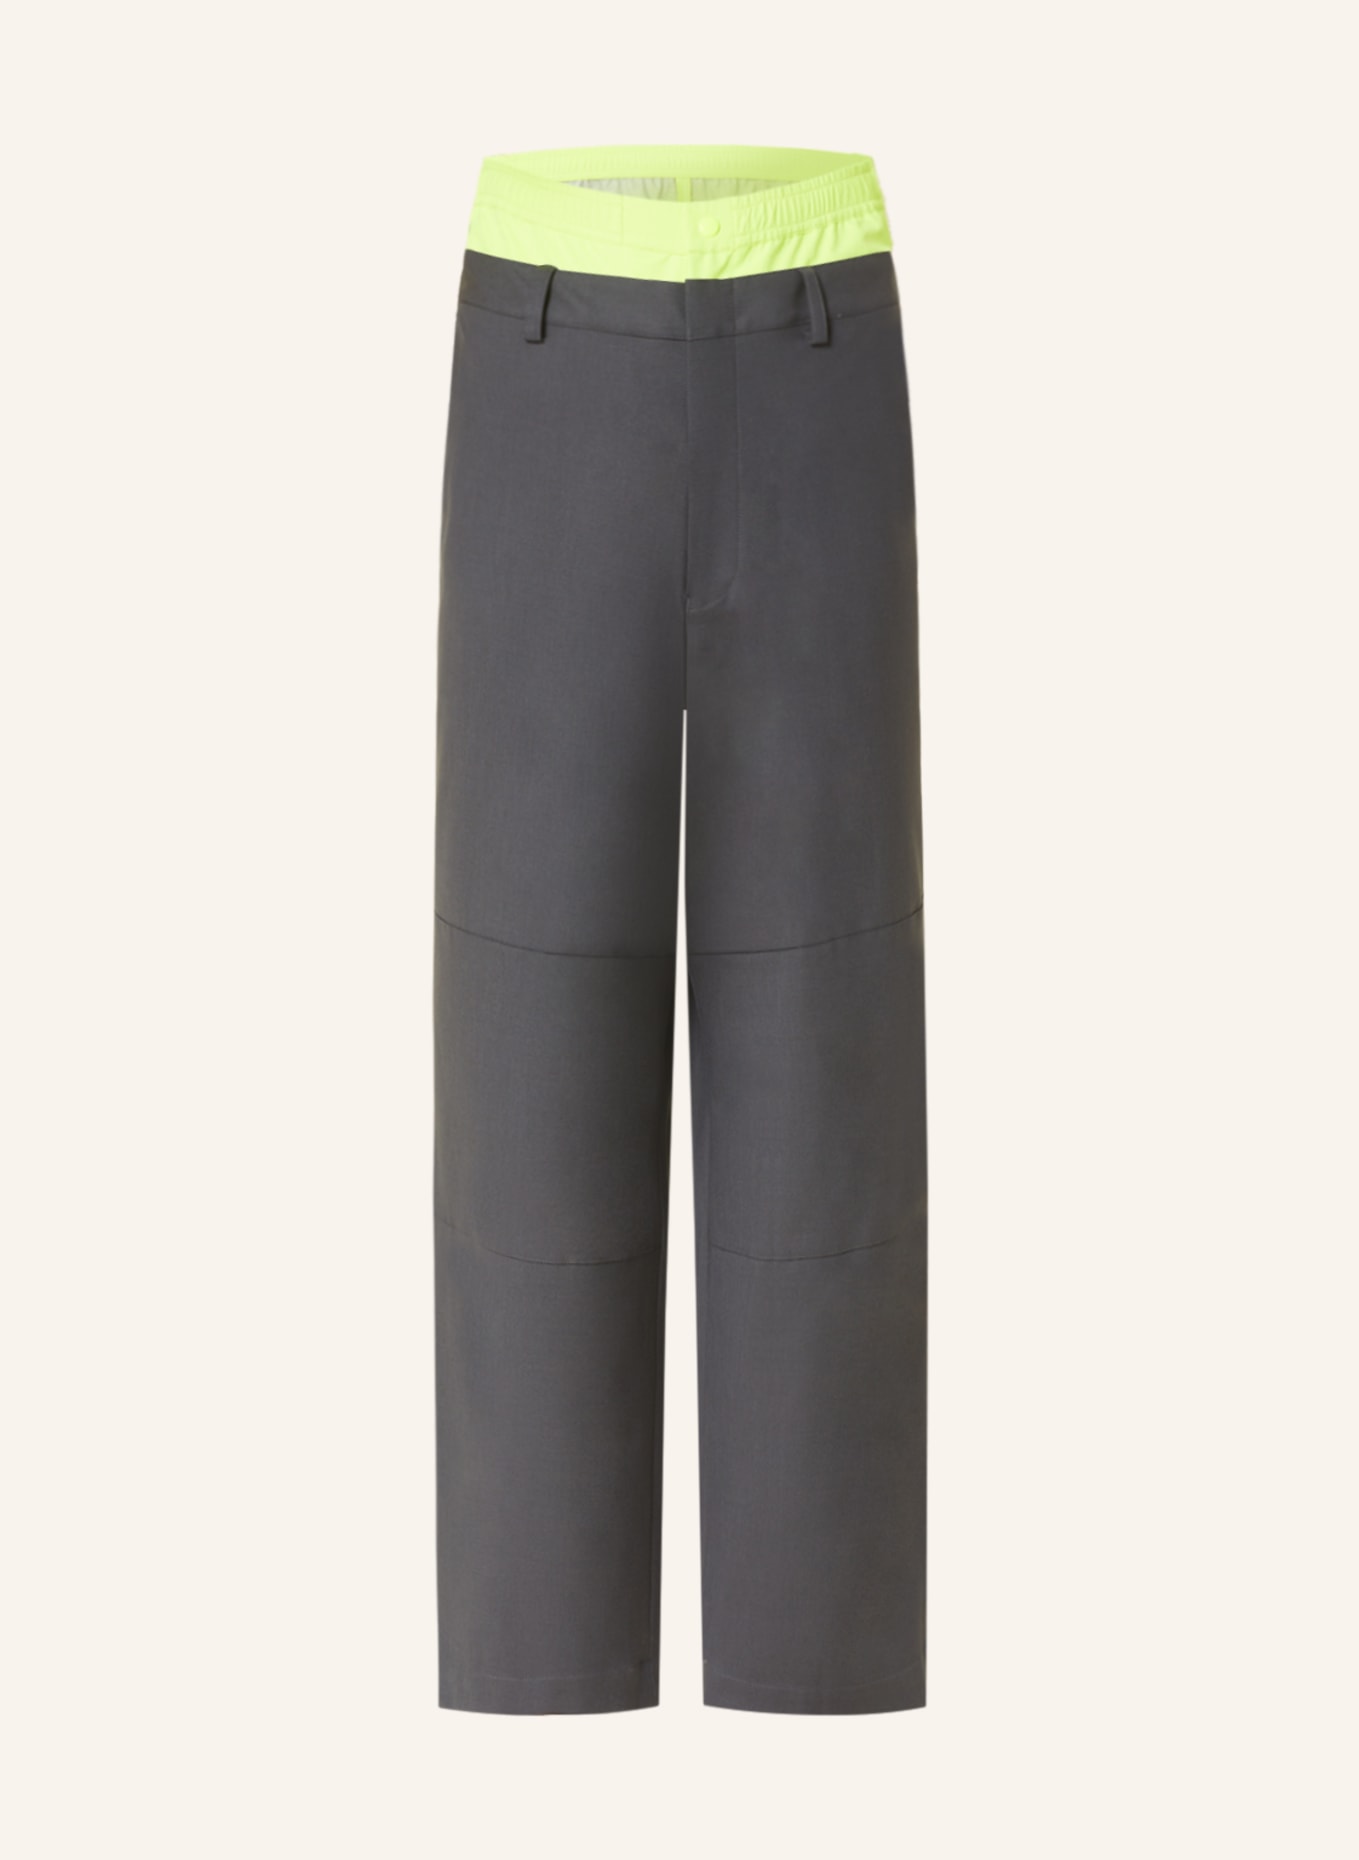 AMBUSH Pants in mixed materials, Color: DARK GRAY/ NEON YELLOW (Image 1)